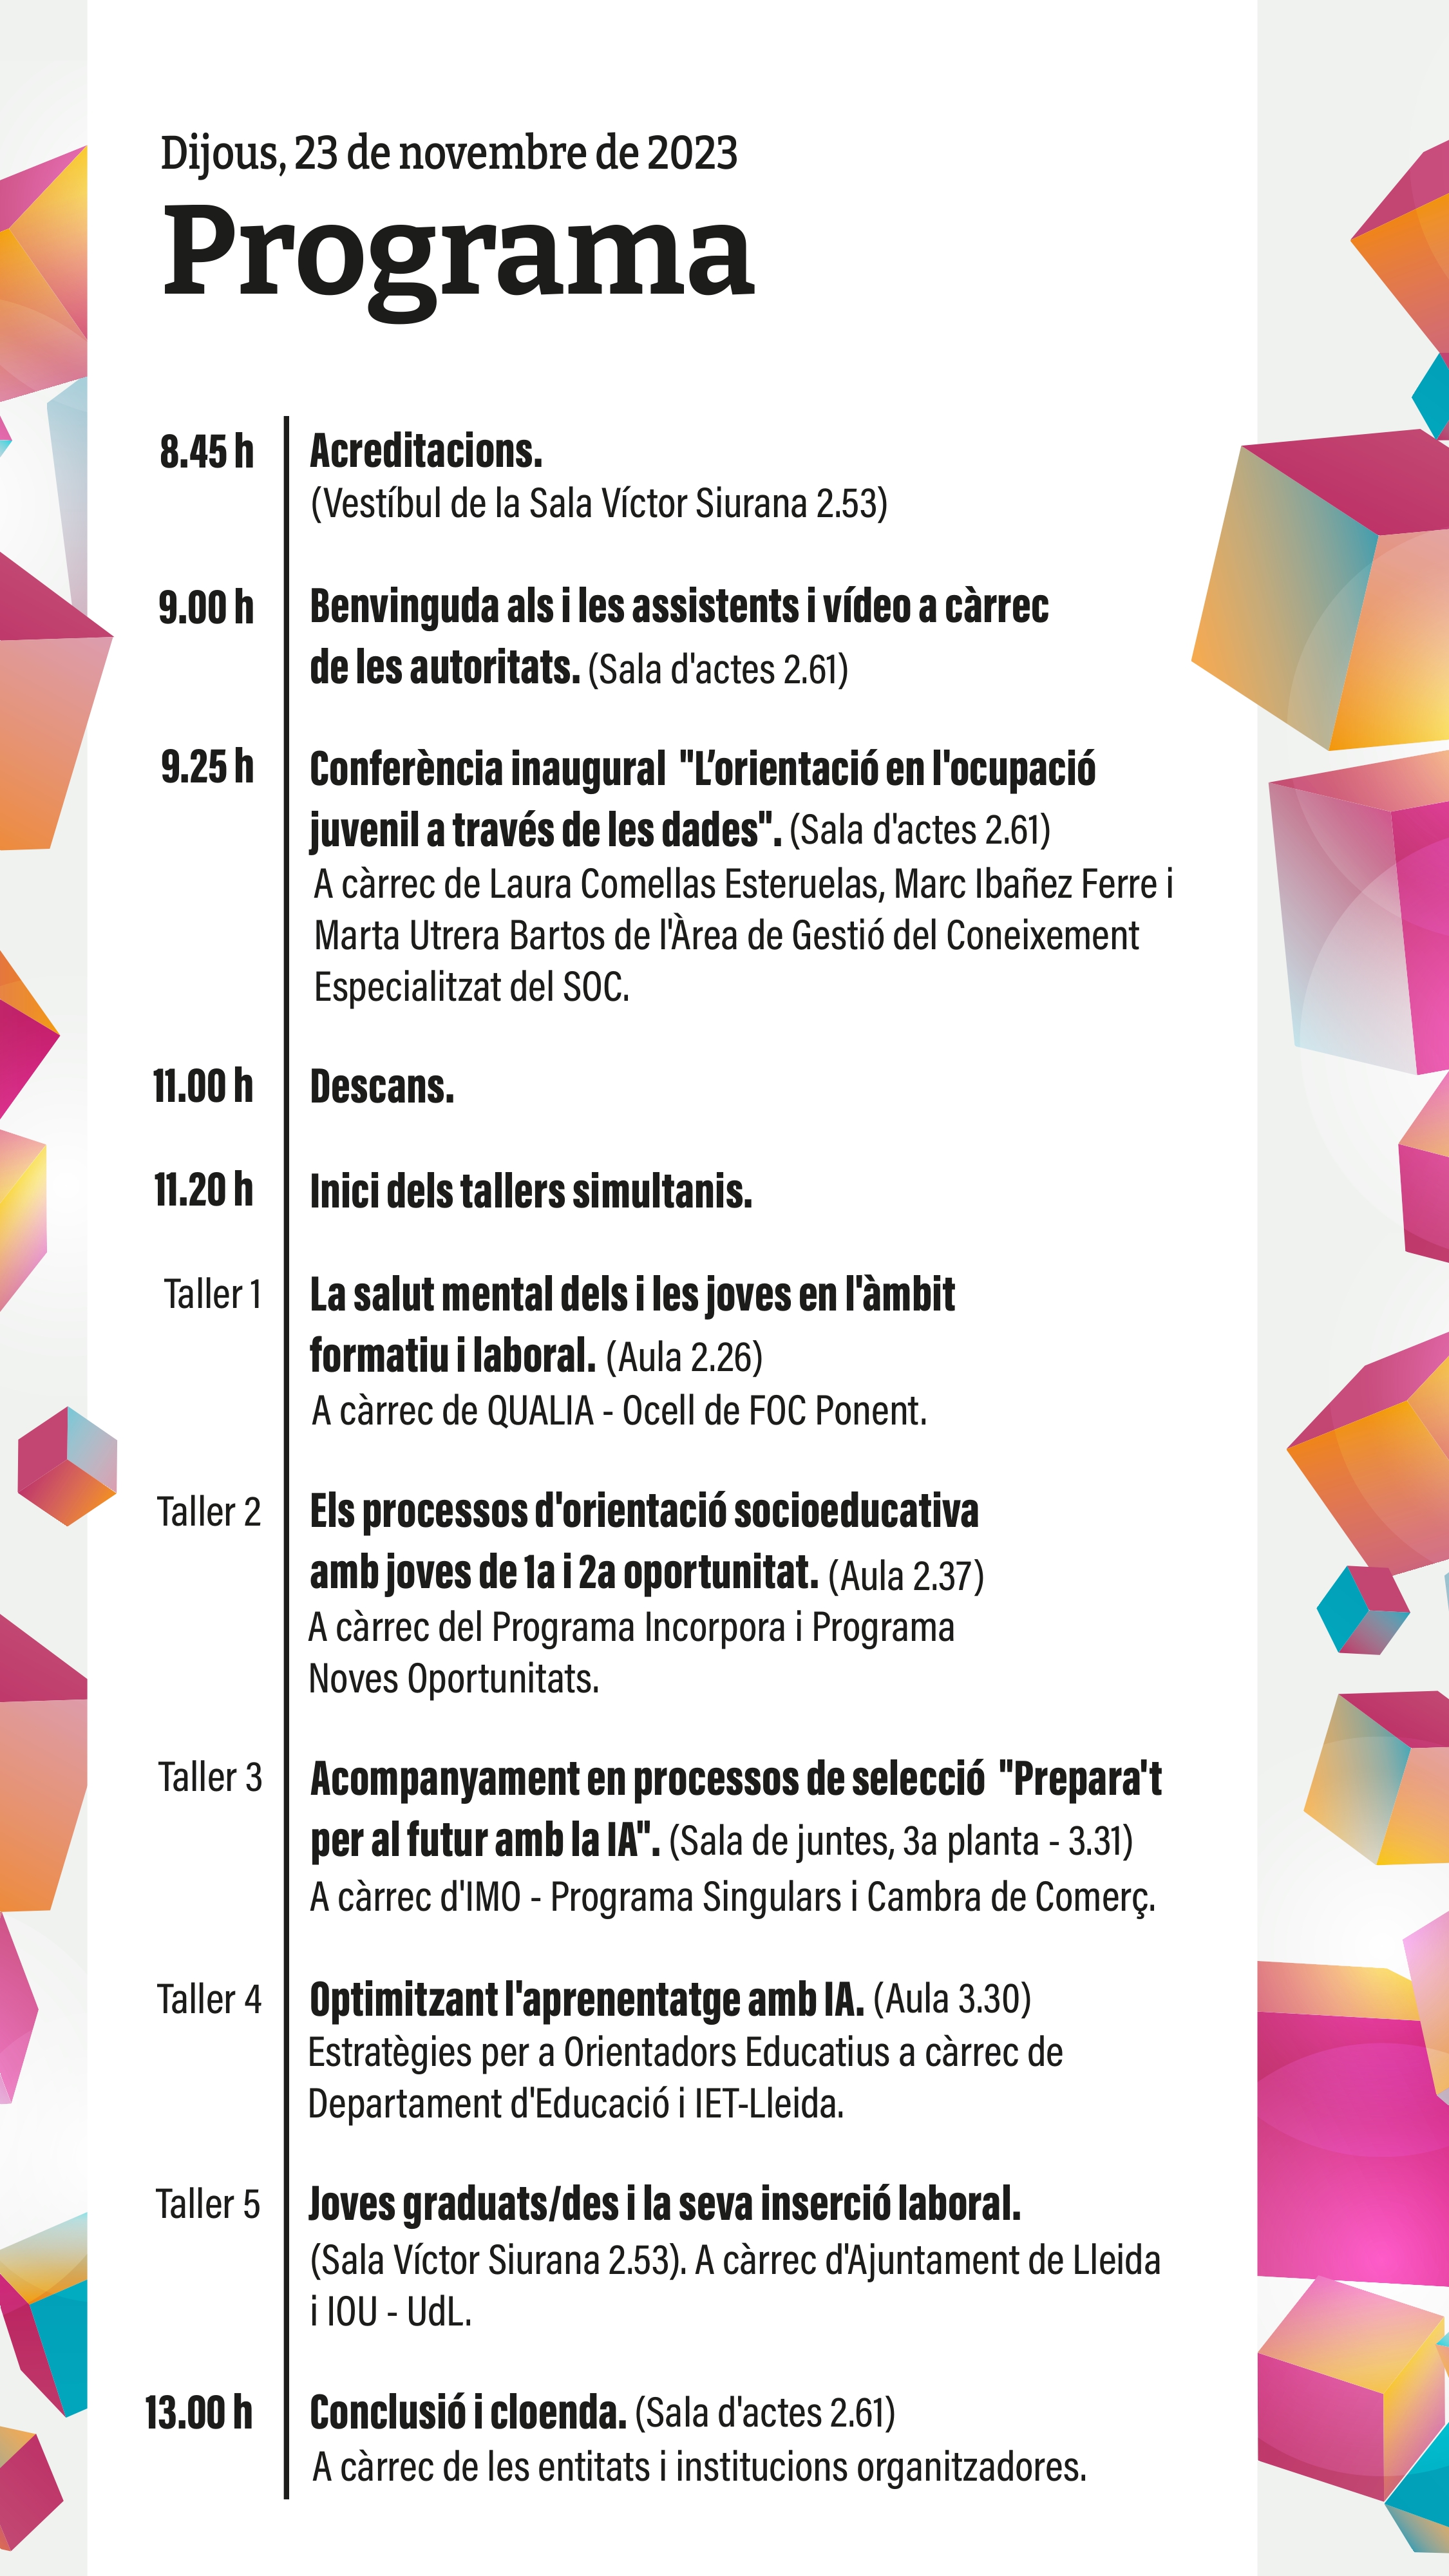 14a Jornada d'Orientació Professional a les Terres de Lleida